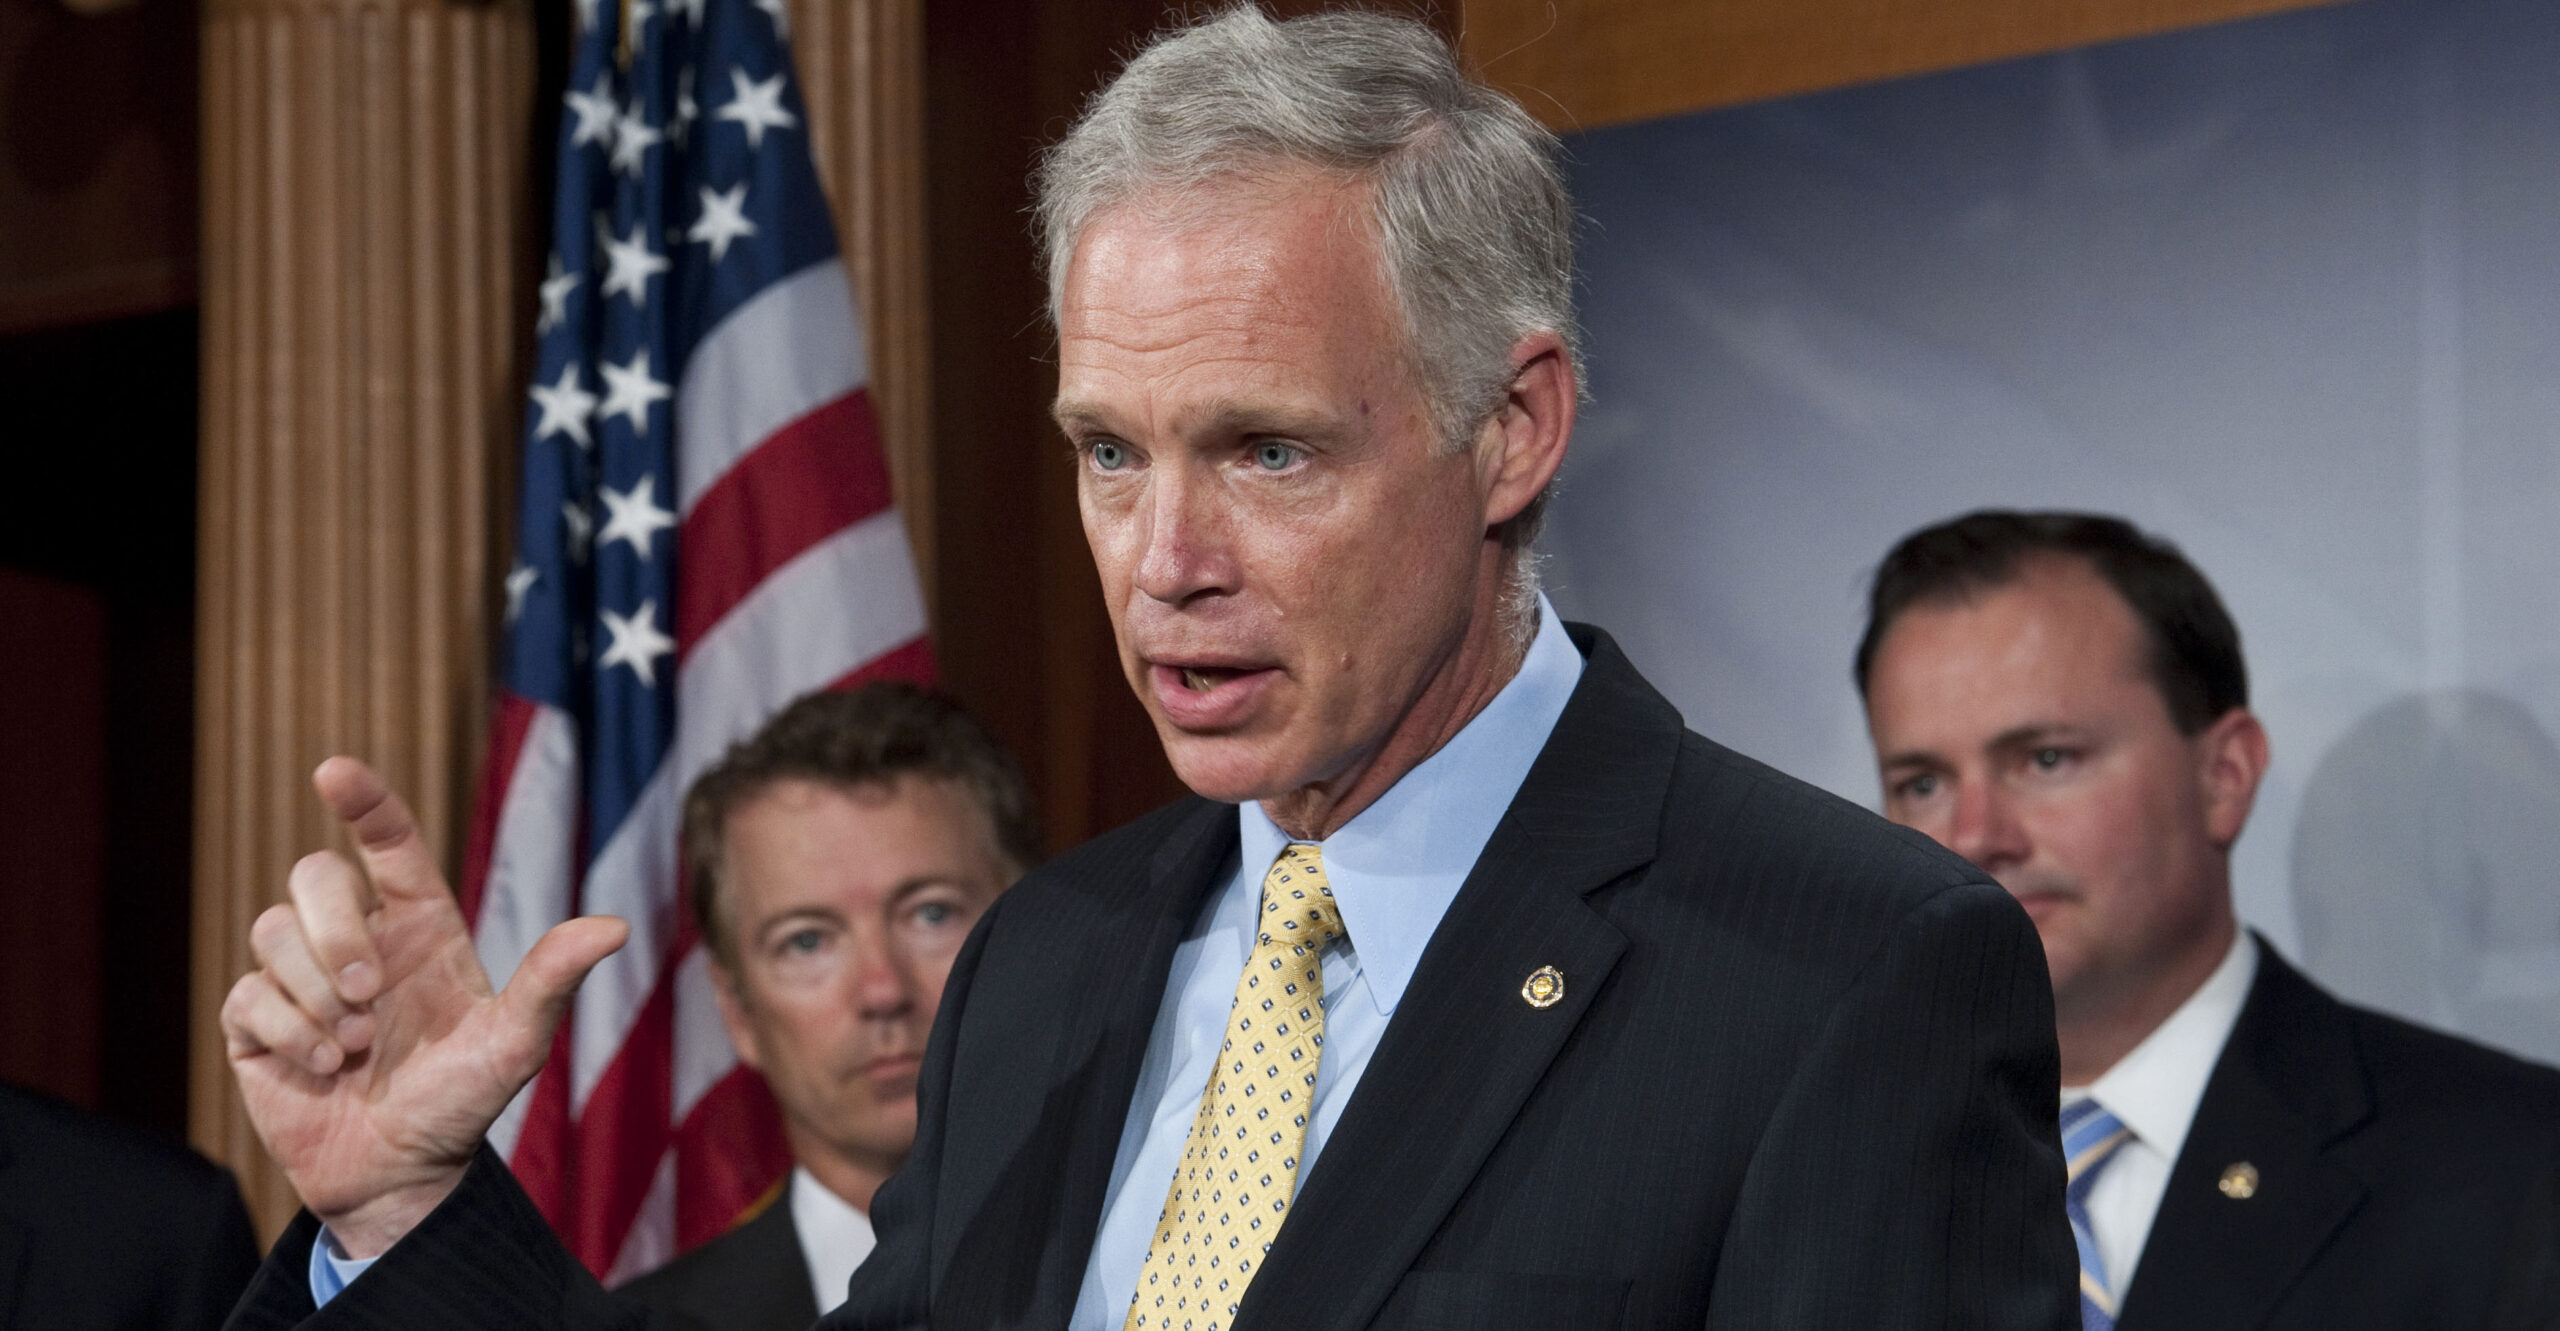 15 GOP Senators Warn Against Secret Border Deal With Democrats